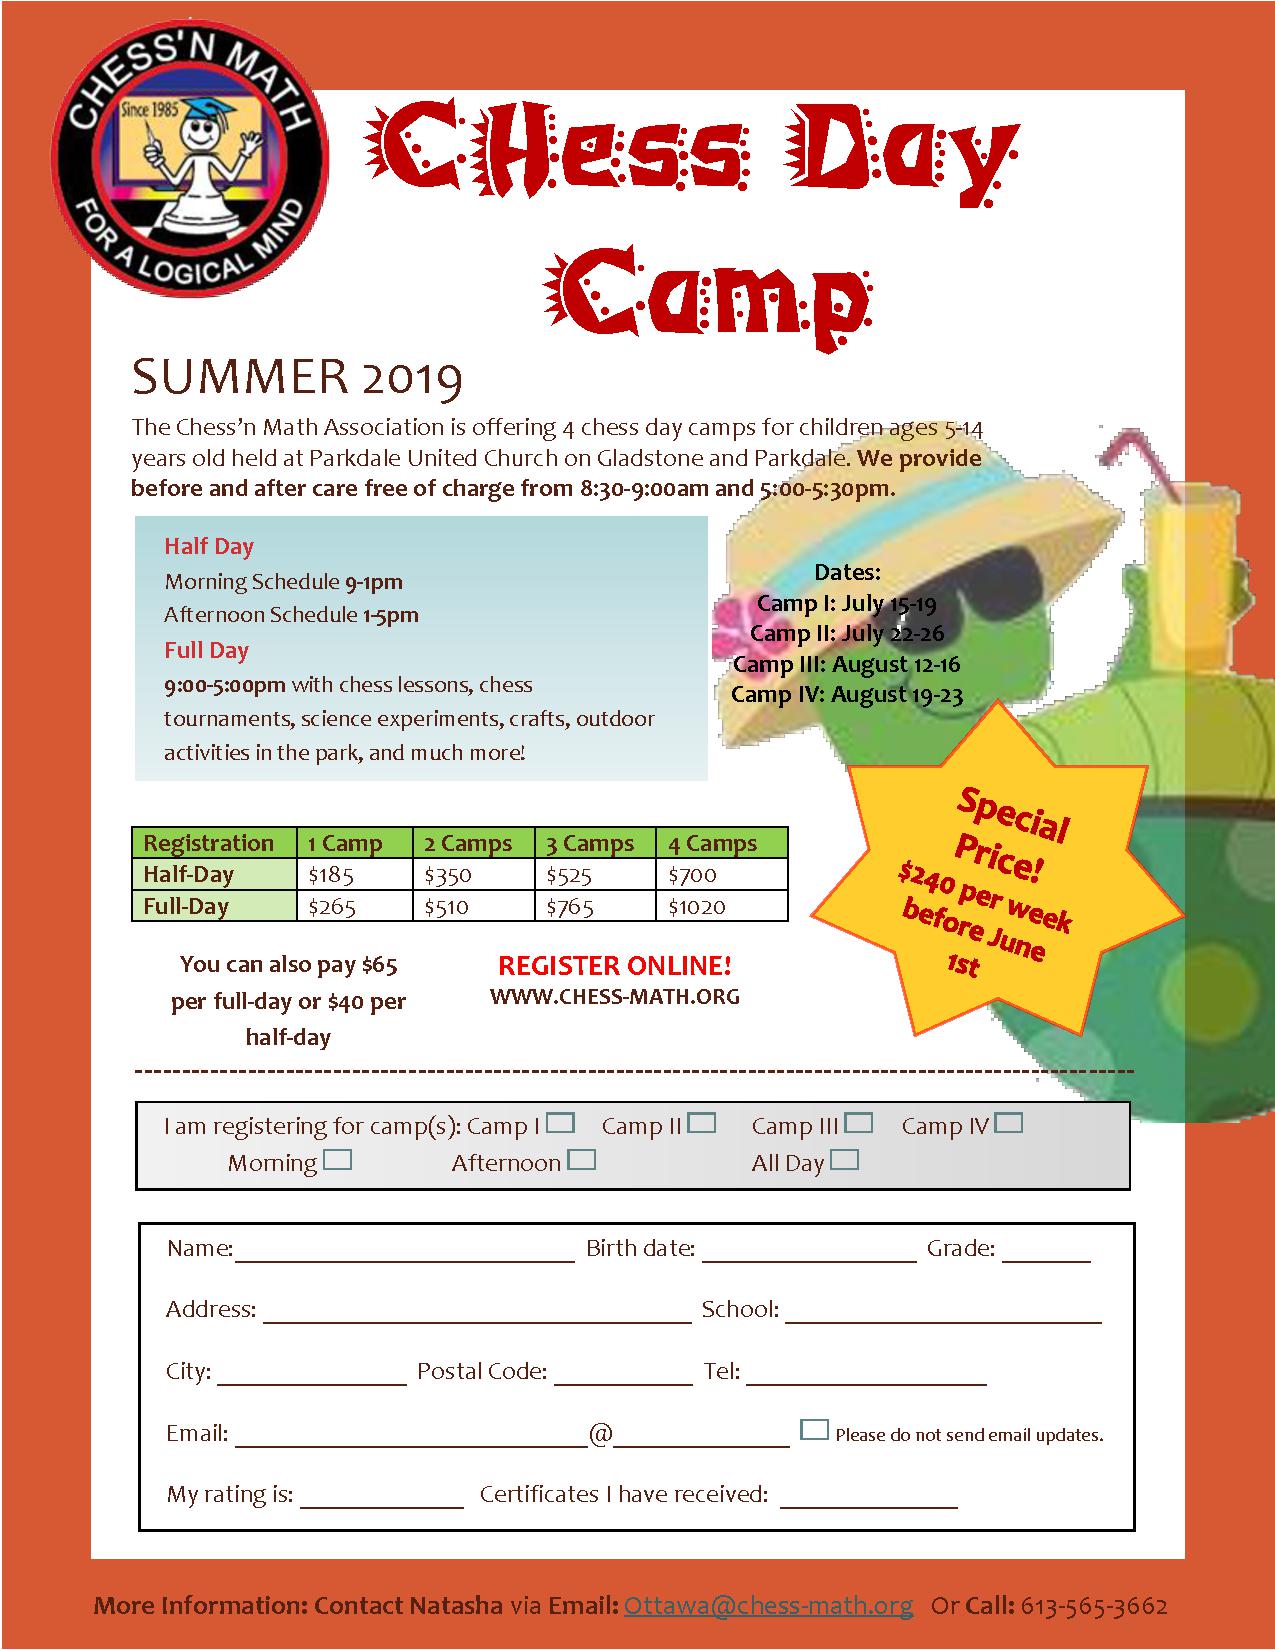 Ottawa Summer Camp 2019